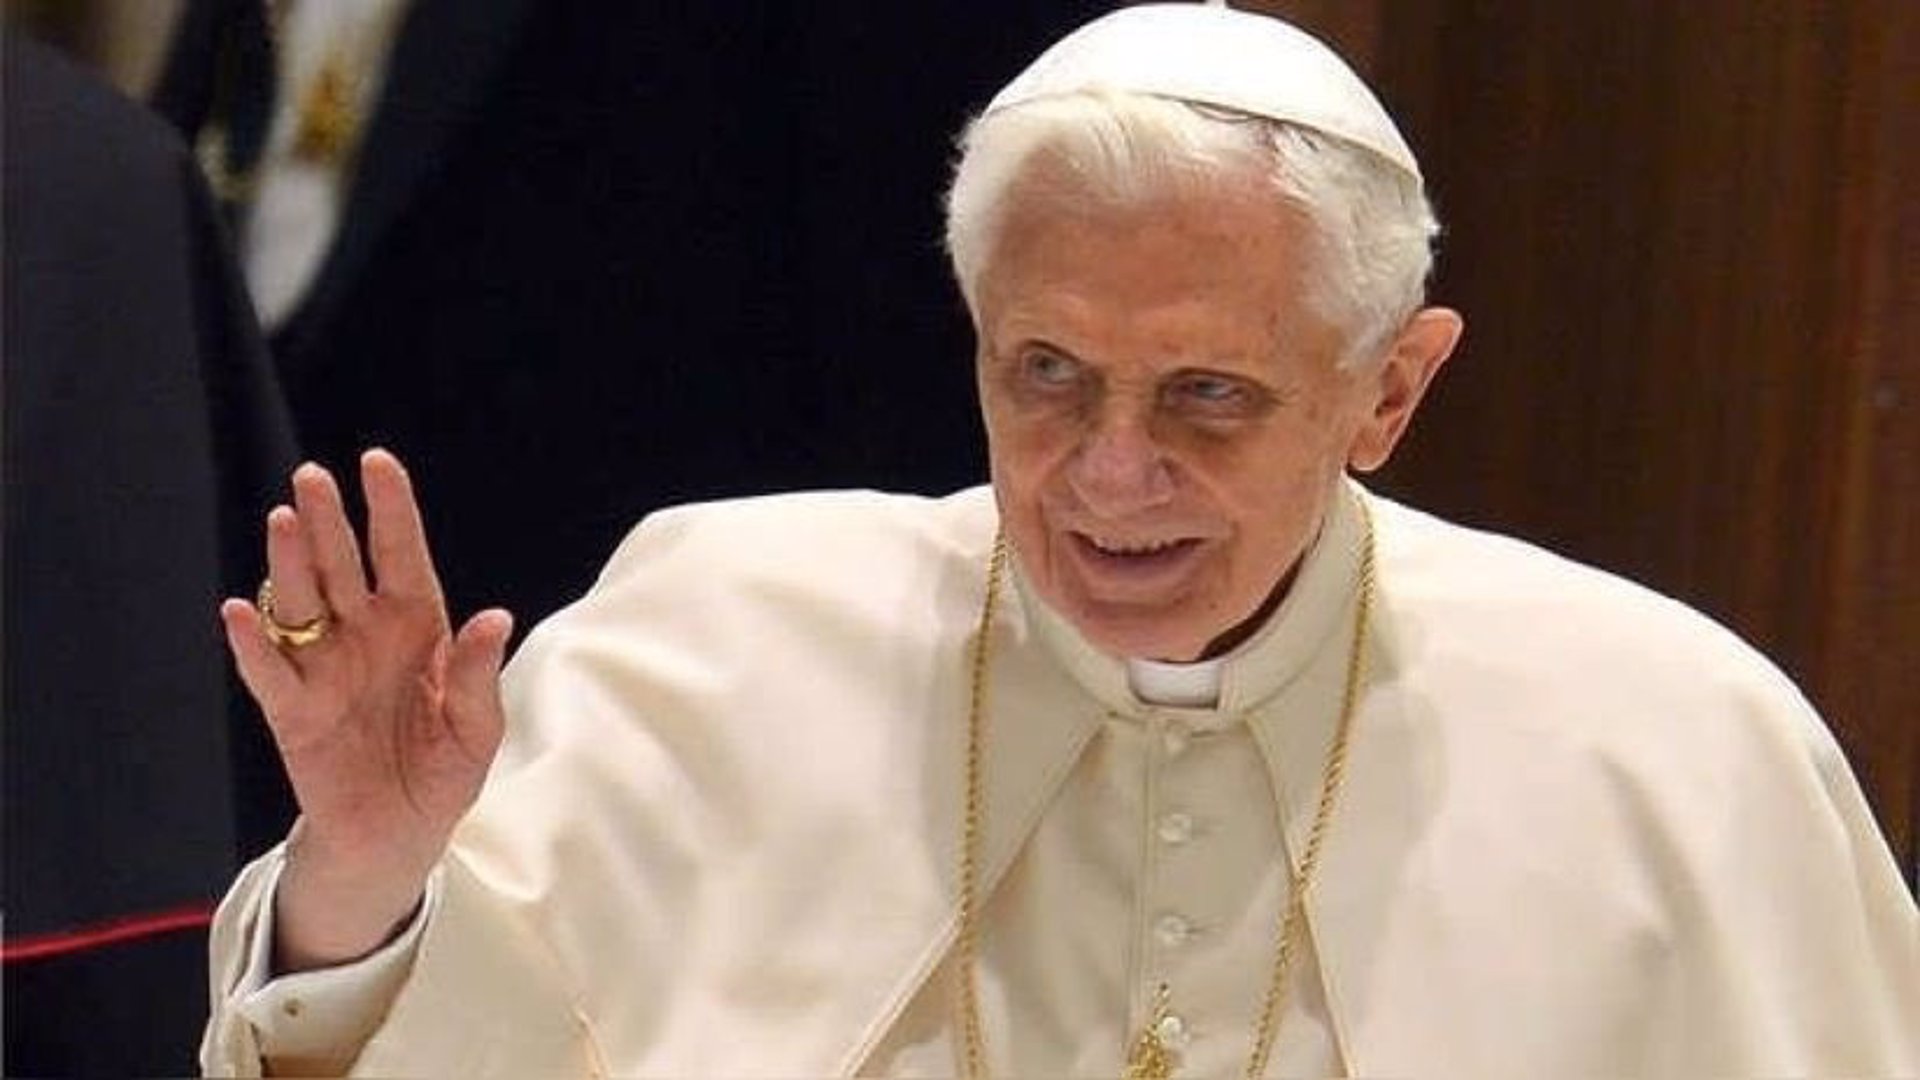 La catedral de Granada celebrará una misa exequial el 3 de enero por el alma del Papa Benedicto XVI